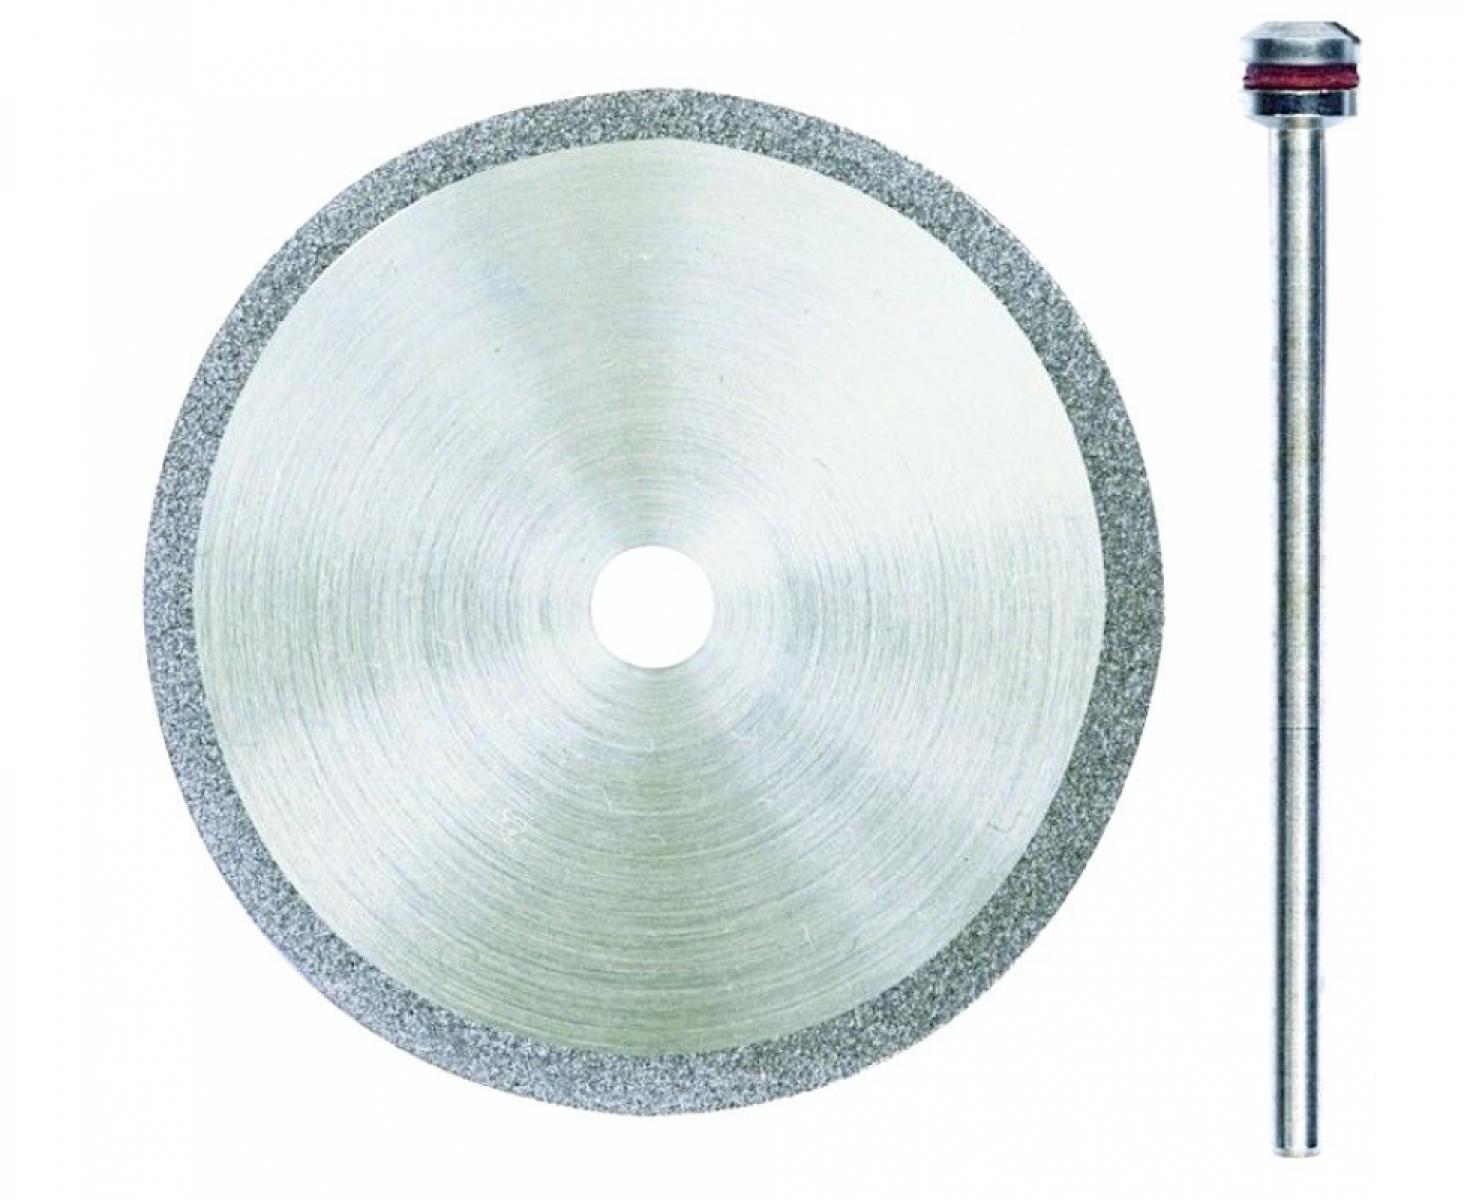 Отрезной диск алмазный с держателем Proxxon Ø 38 мм 28842